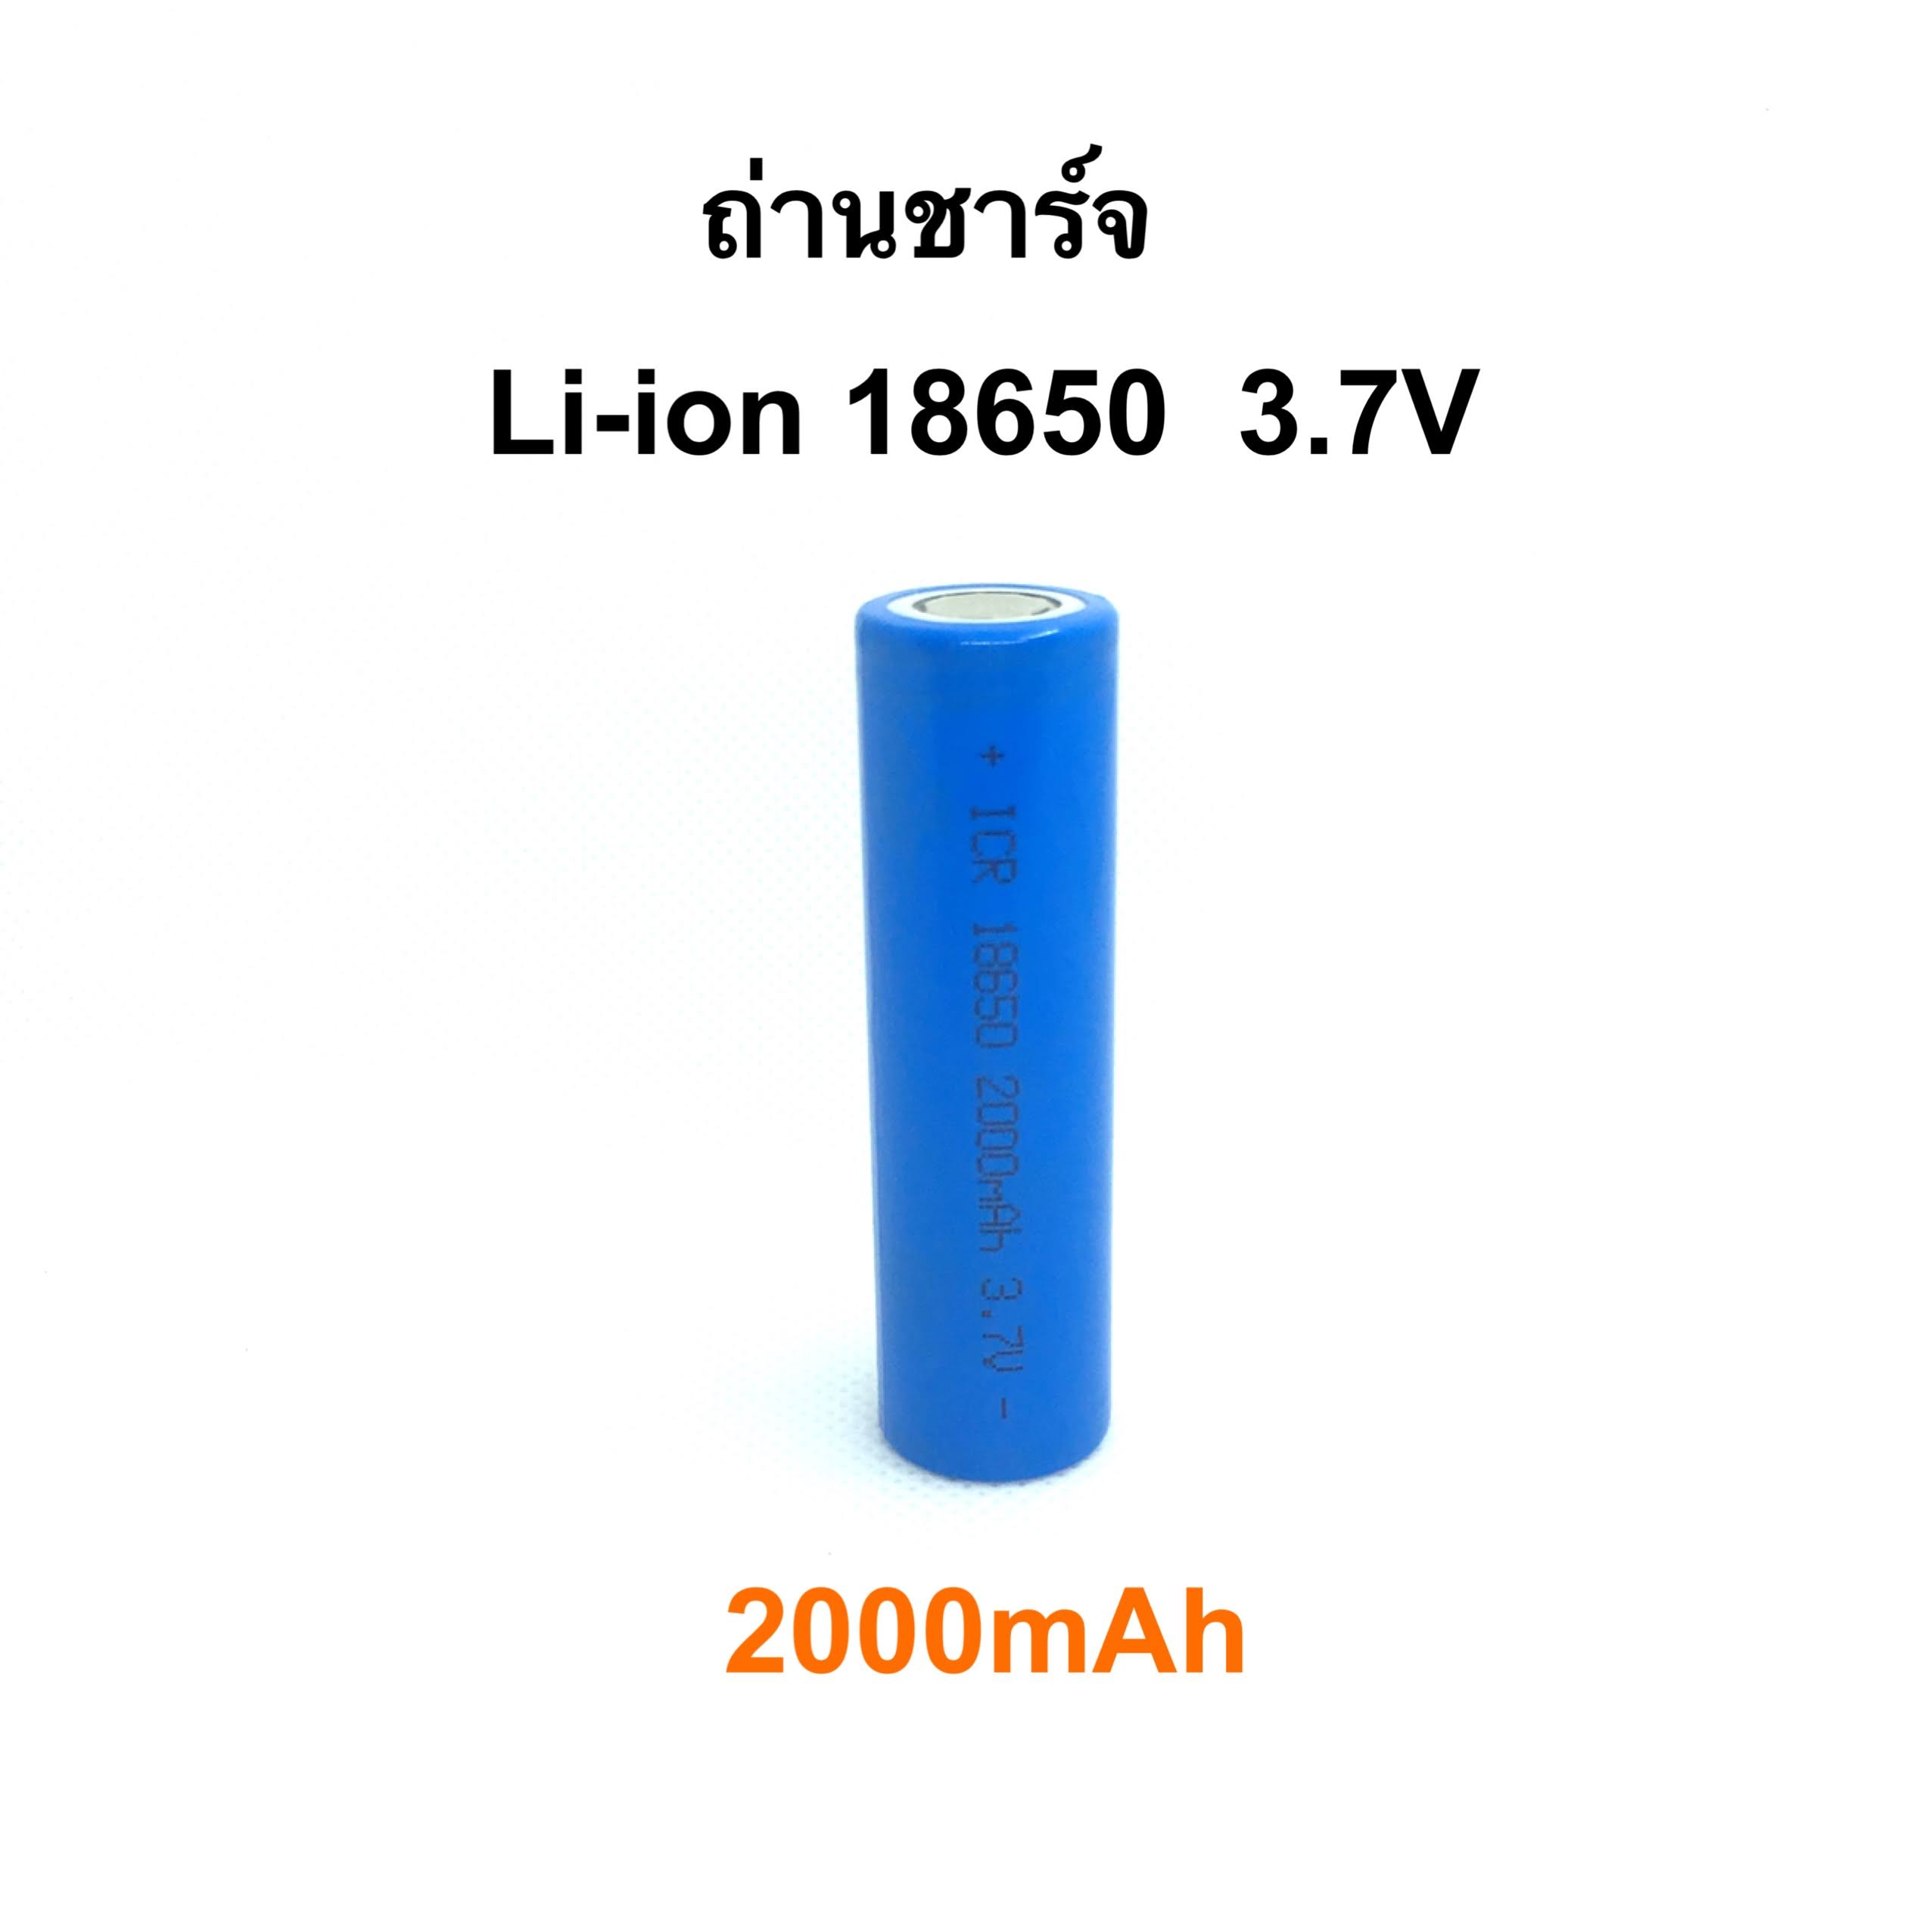 ถ่านชาร์จ Li-ion 18650 3.7V 2000mAh คุณภาพสูง ความจุเต็ม ราคาประหยัด ( ราคา 1 ก้อน )